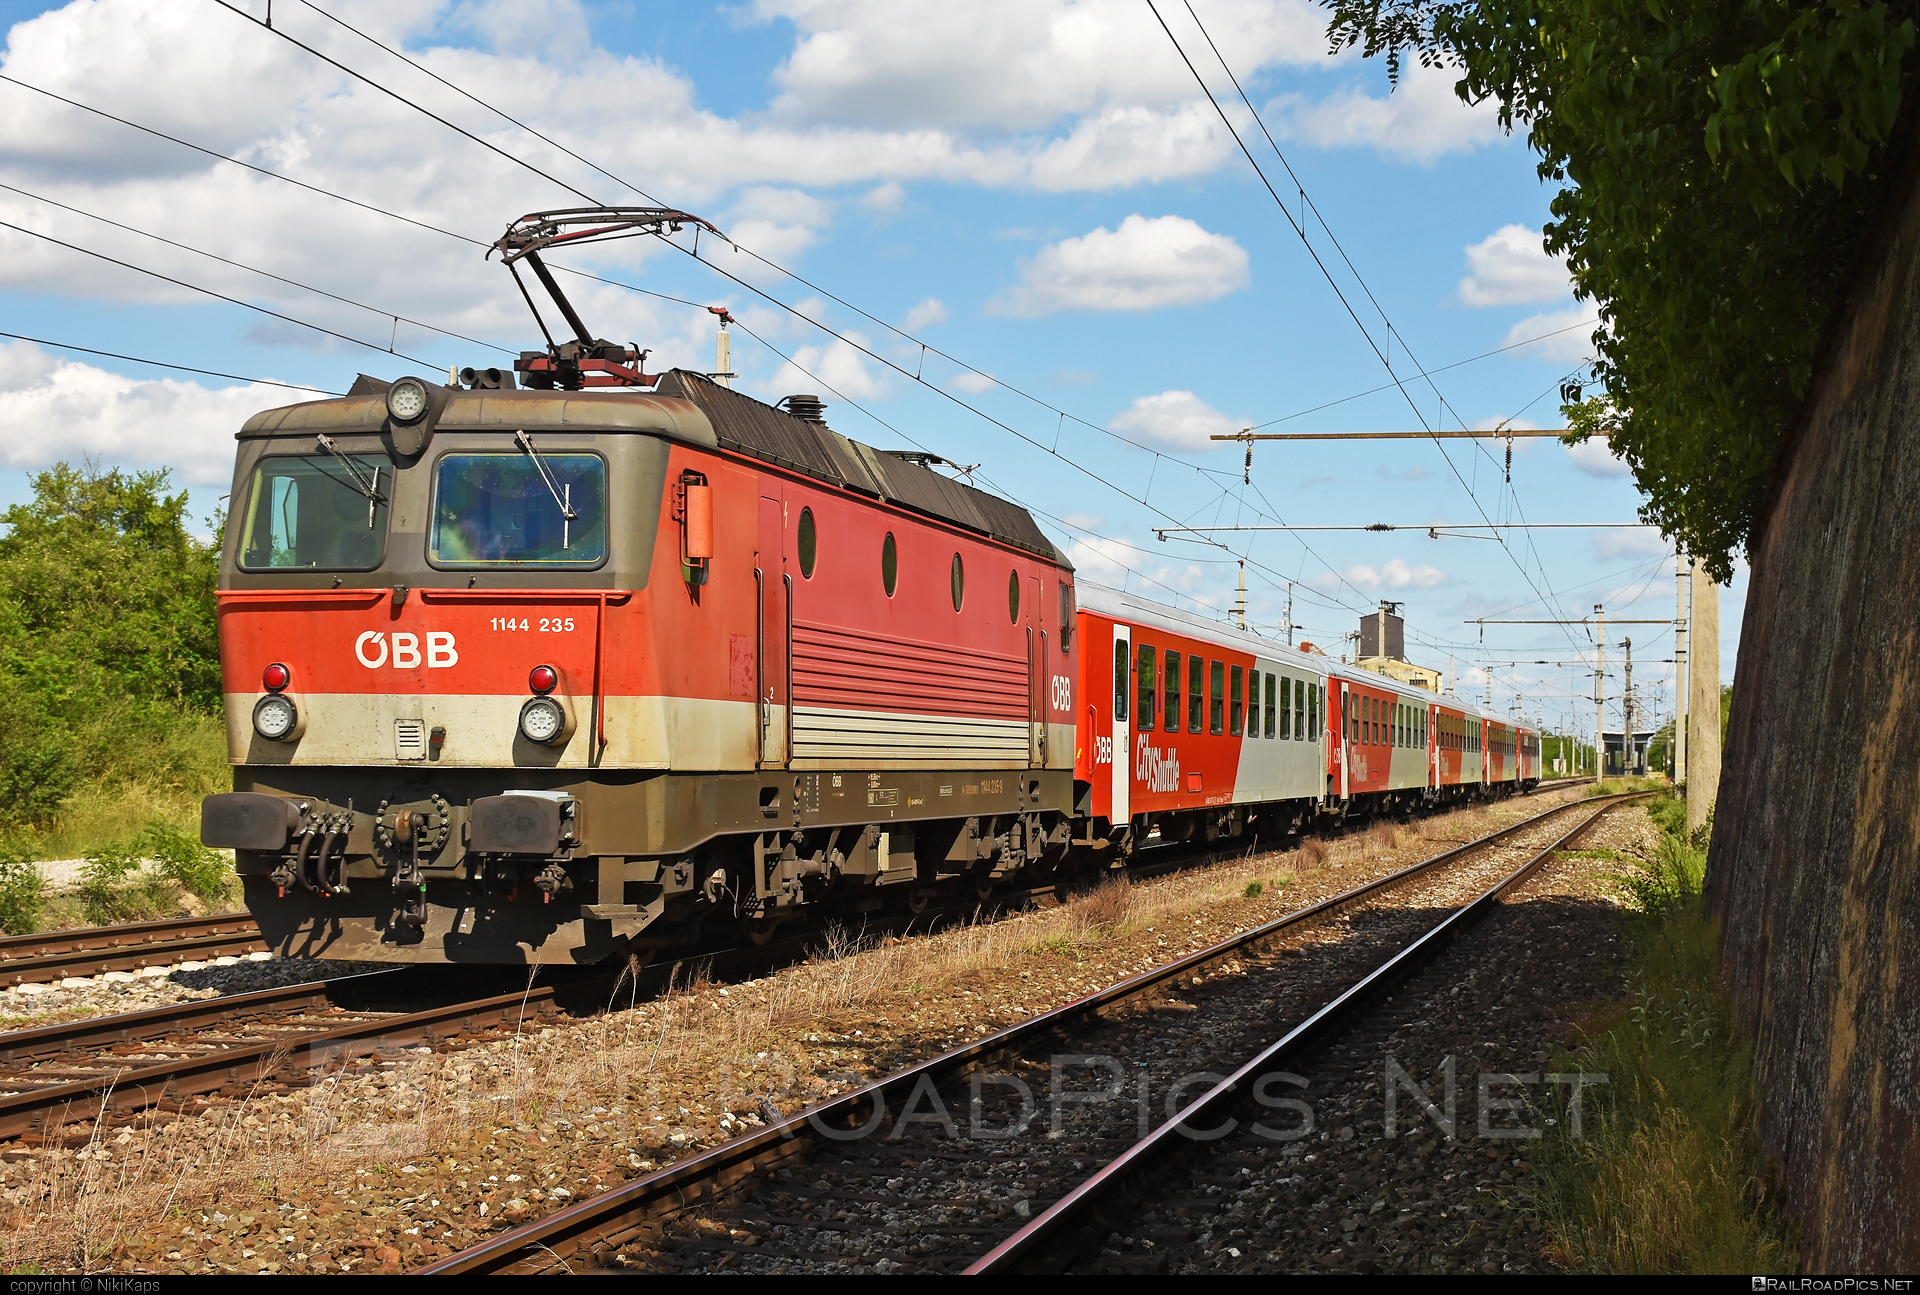 SGP 1144 - 1144 235 operated by Österreichische Bundesbahnen #cityshuttle #obb #obb1144 #obbClass1144 #osterreichischebundesbahnen #sgp #sgp1144 #simmeringgrazpauker